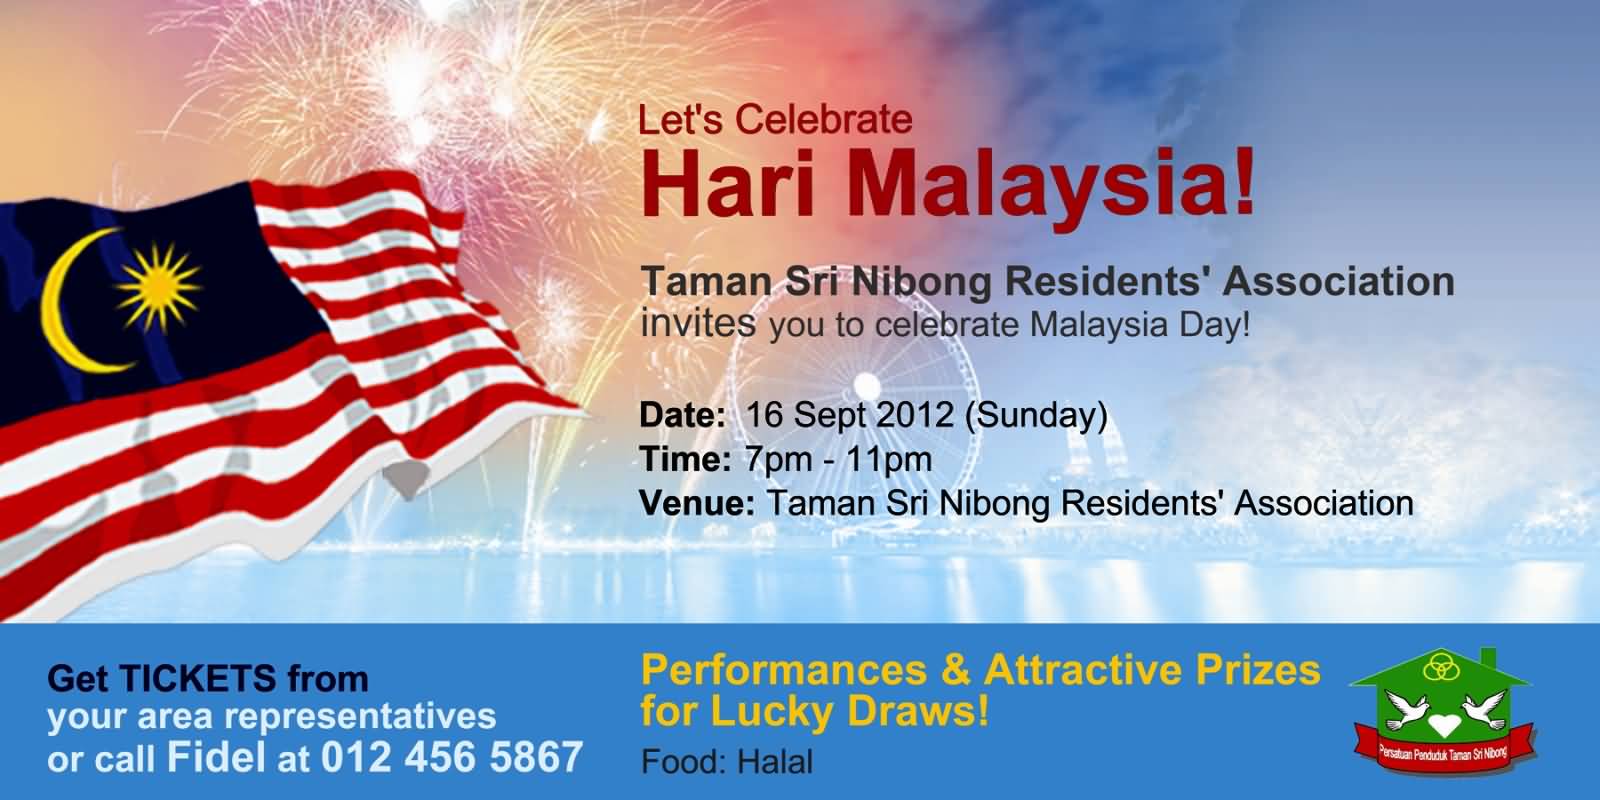 Let's Celebrate Hari Malaysia